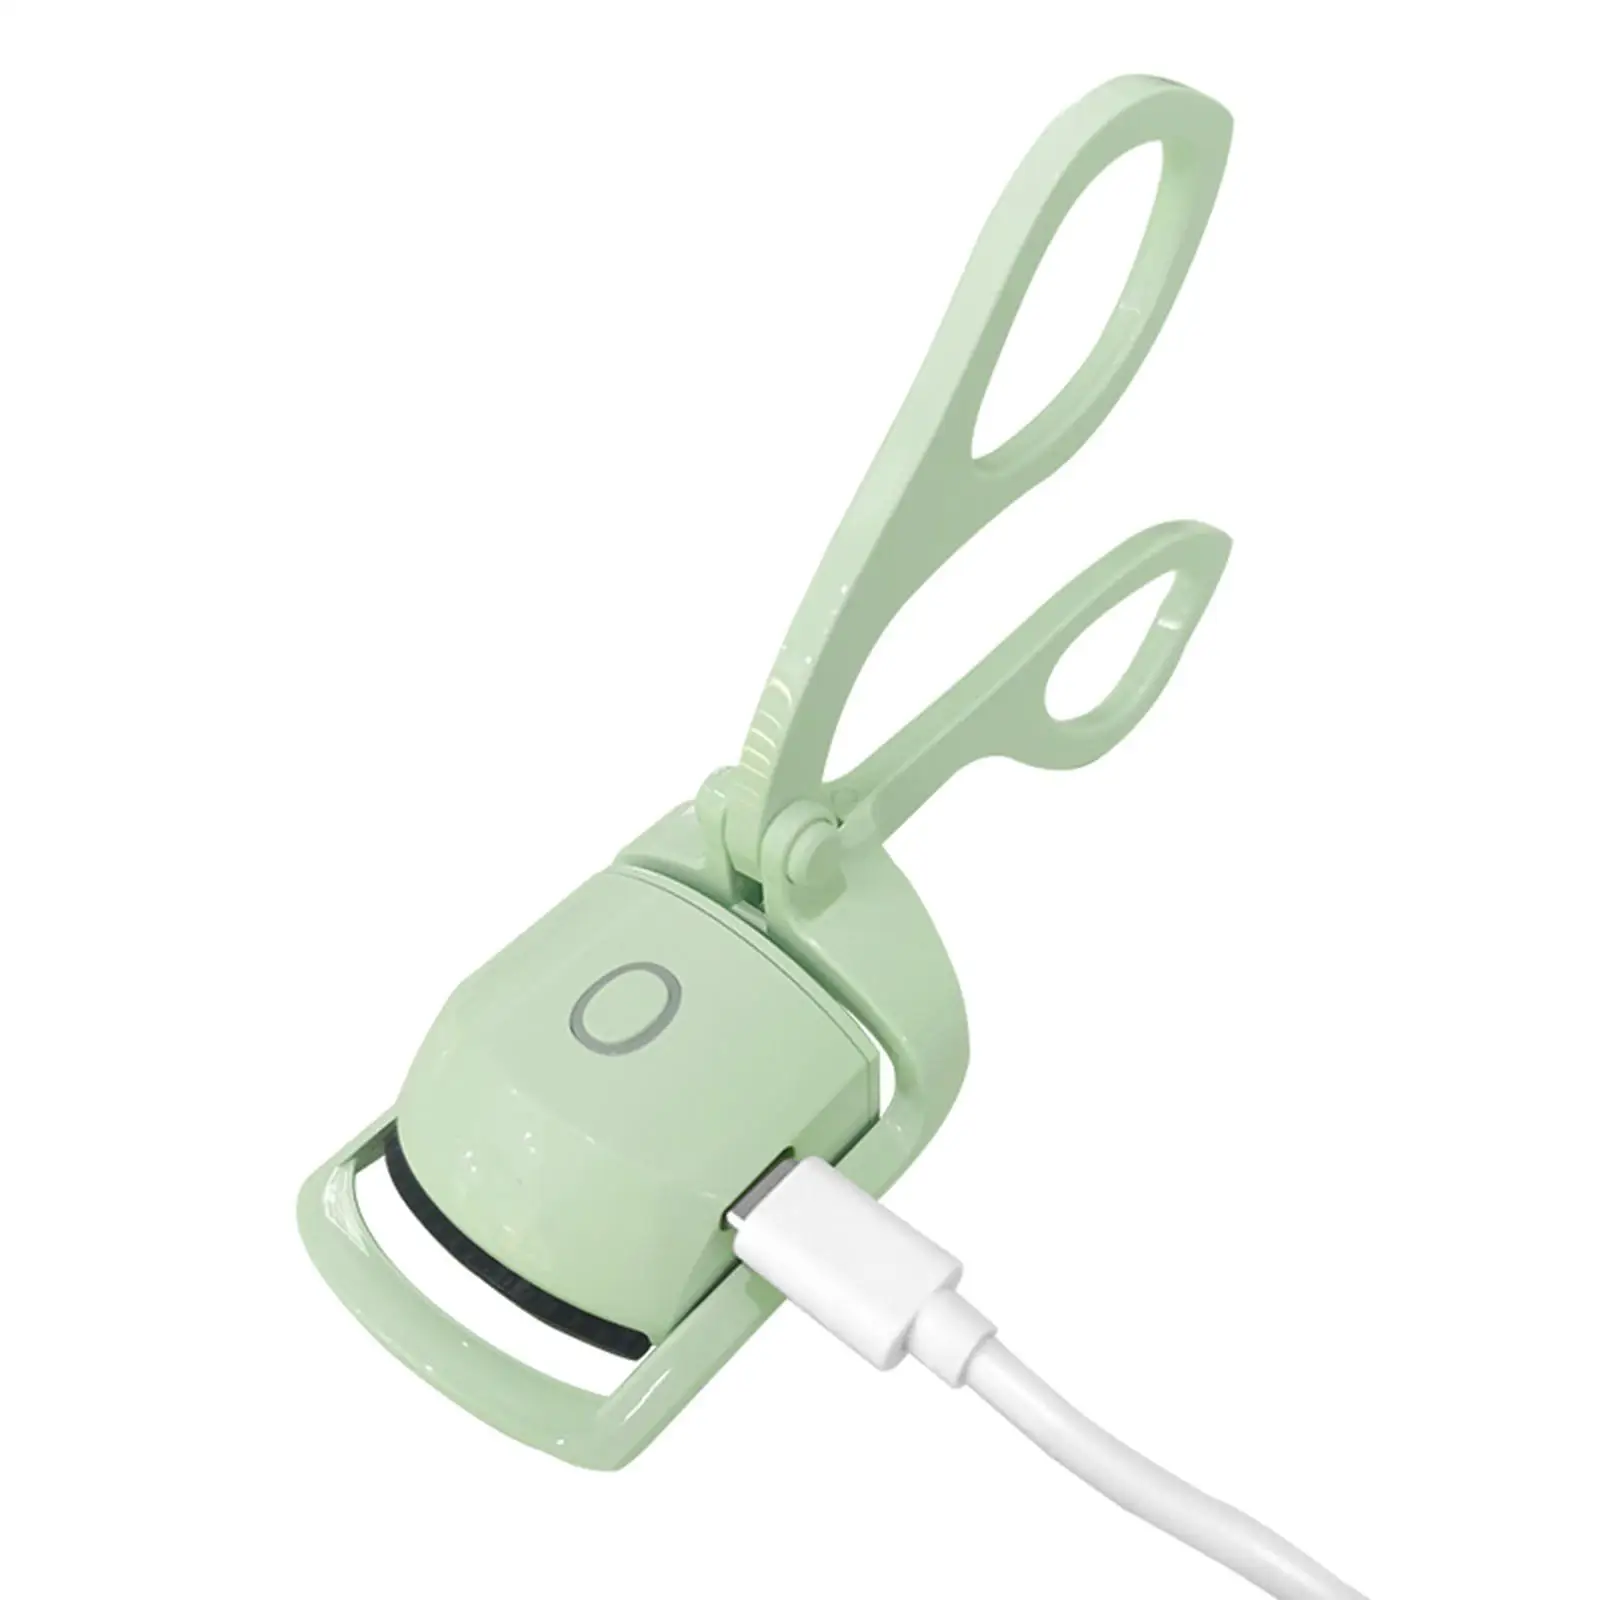 Heated Eyelash Curler Long & Voluminously Curled eyelash in Seconds USB